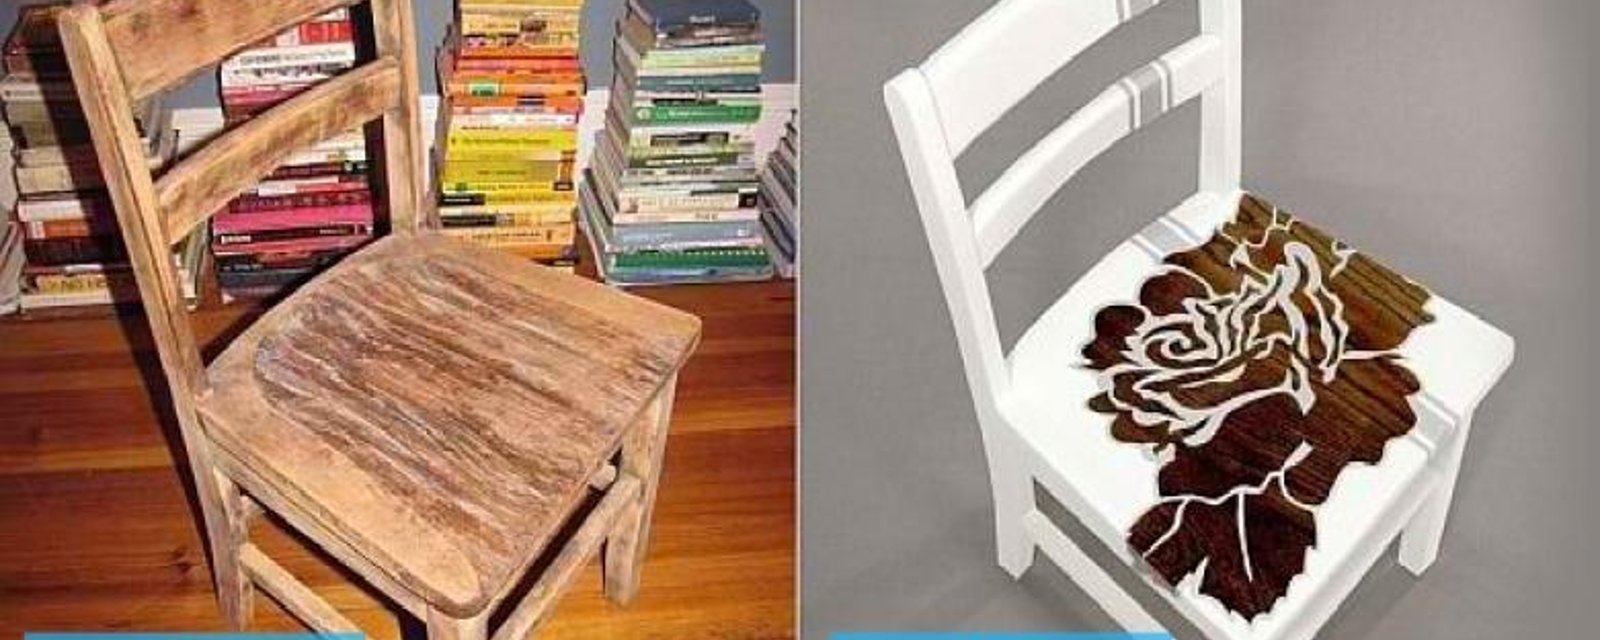 DIY : Recyclez vos vieilles chaises pour des résultats spectaculaires (photos avant/après)